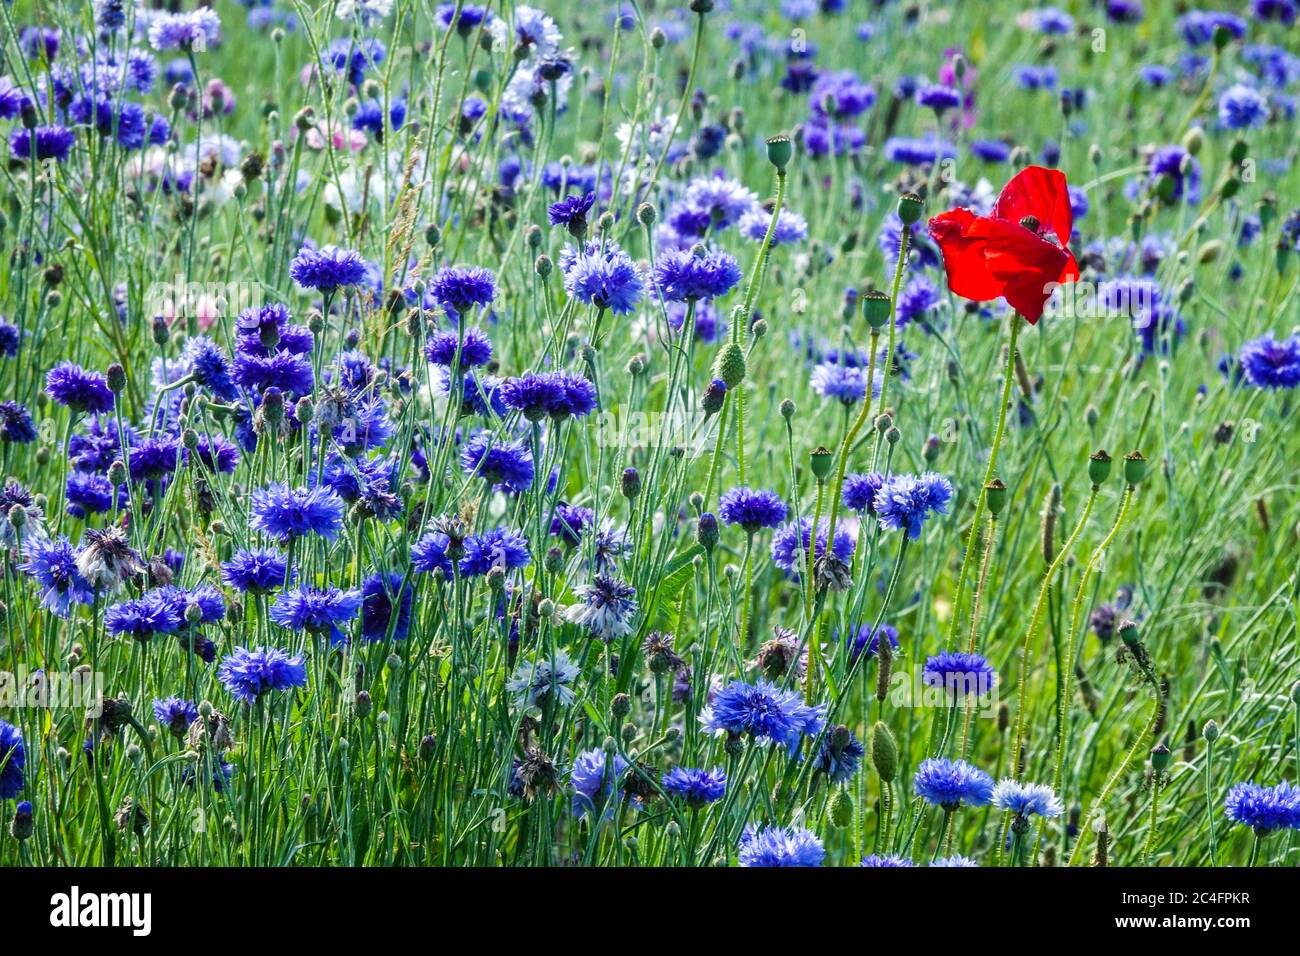 Red Blue Red Wildflower prato Fiori Centaurea Poppy Papaver rhoeas Single in Blue Bachelors Buttons Blooms Wildflowers Meadow Cornflowers June Foto Stock